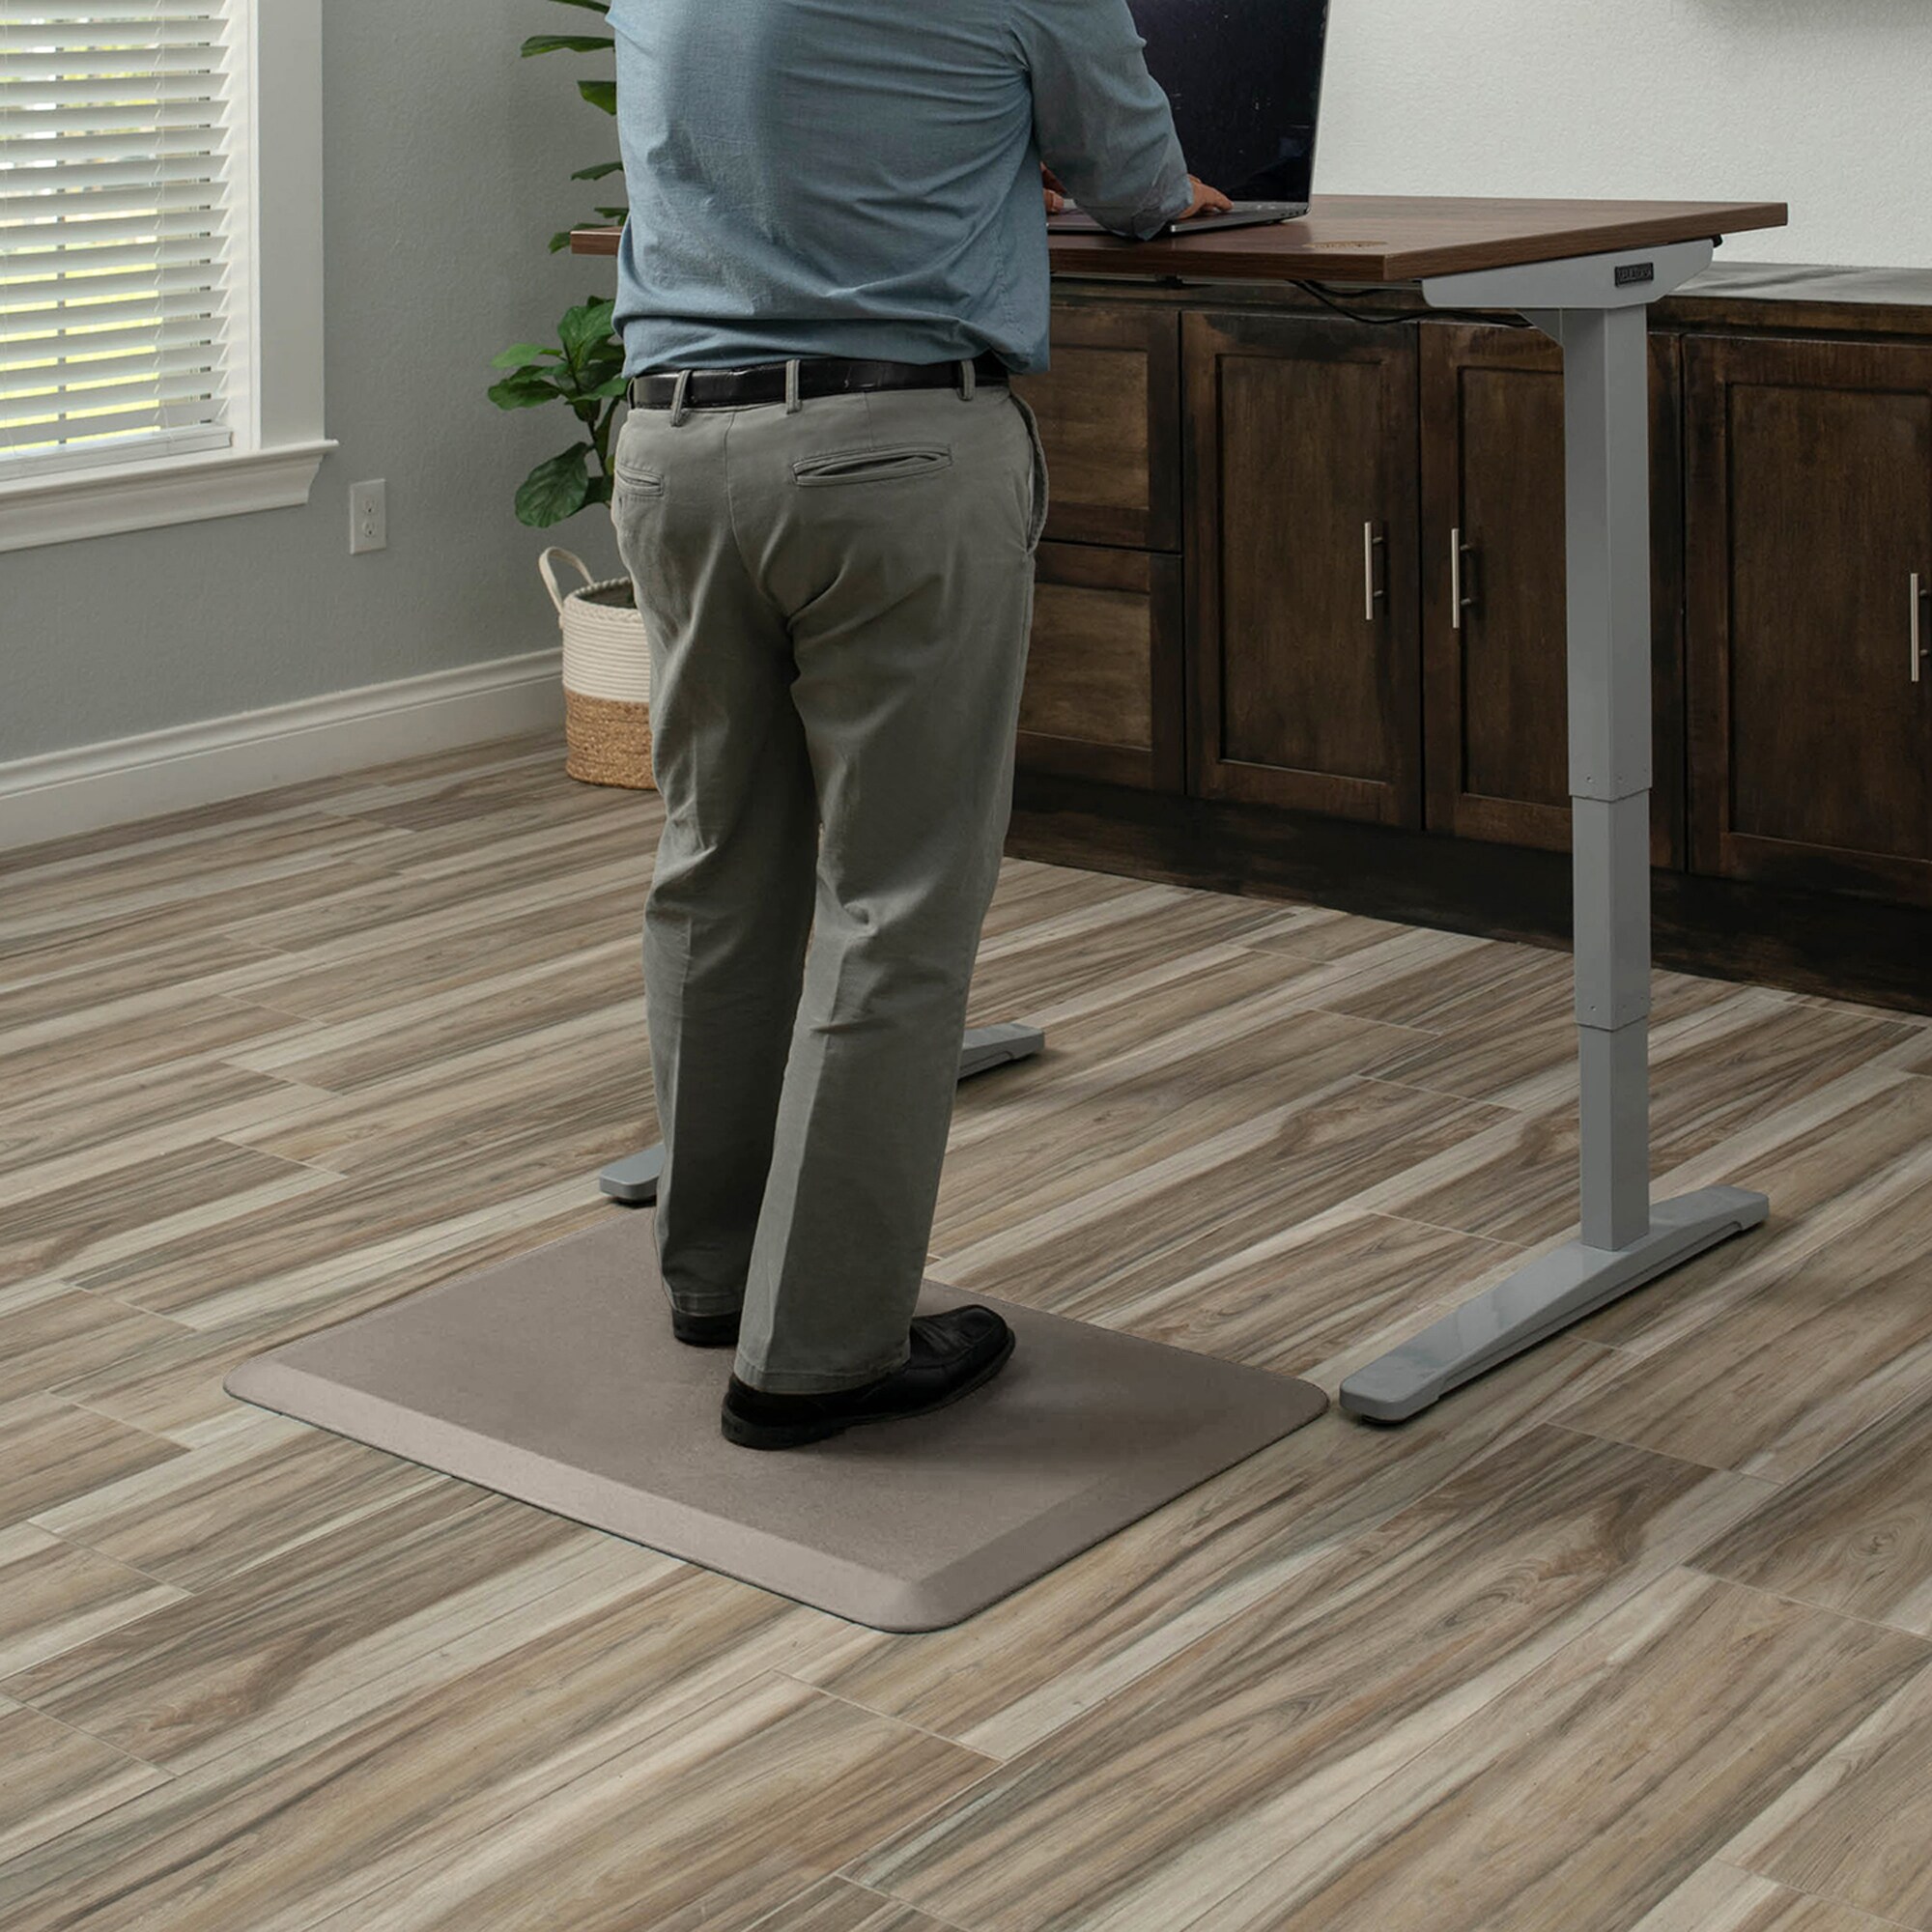 GelPro Elite Anti-Fatigue Kitchen Comfort Floor Mat - 20x36 - Linen Khaki